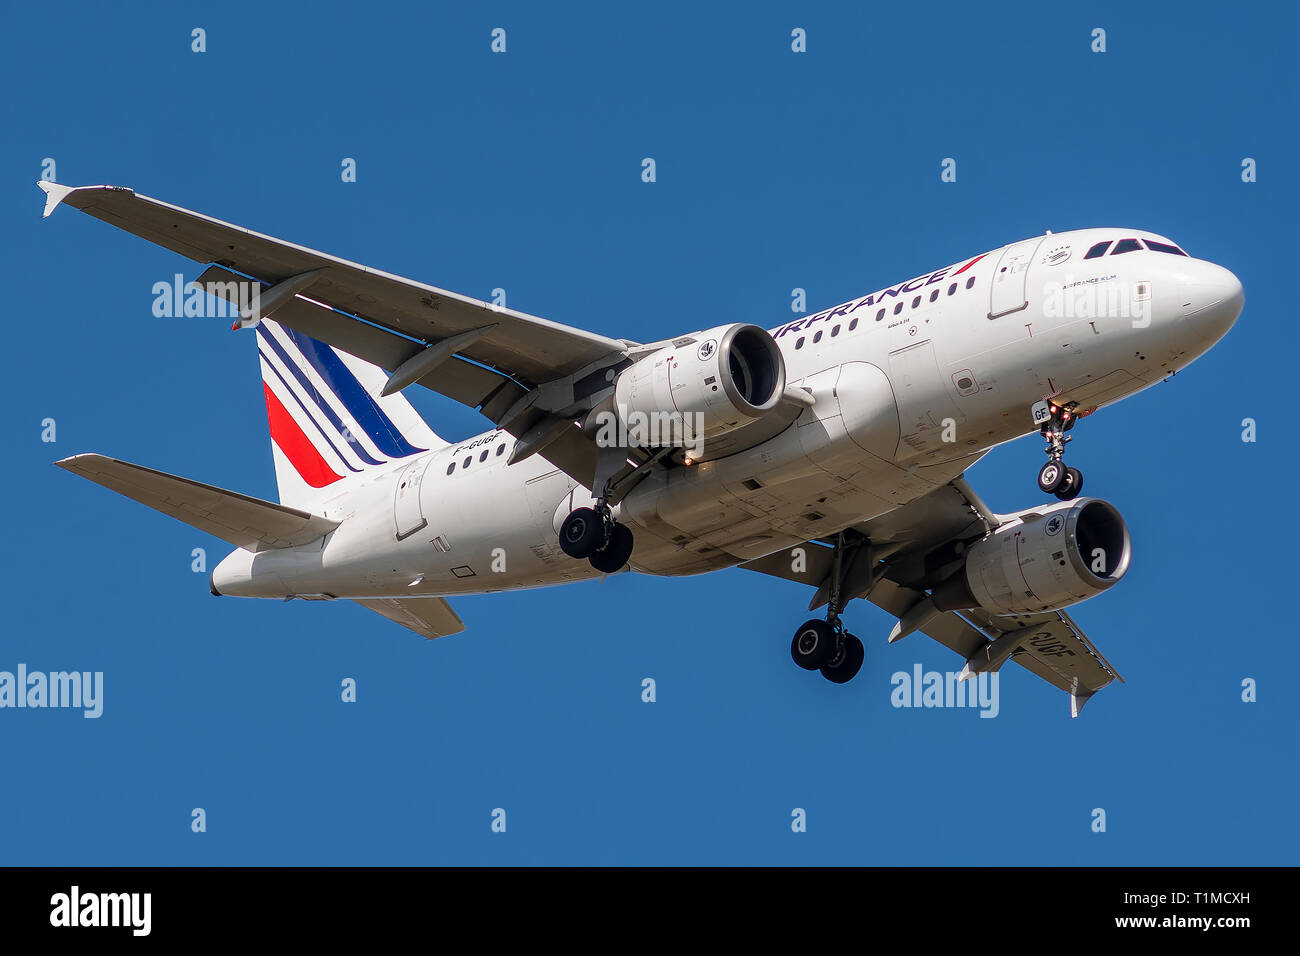 F-GUGF, Airbus A 318-111-2109, März 26, 2019 Landung auf den Pisten von Paris Roissy Charles de Gaulle Airport am Ende von Flug Air France AF 1229 co Stockfoto